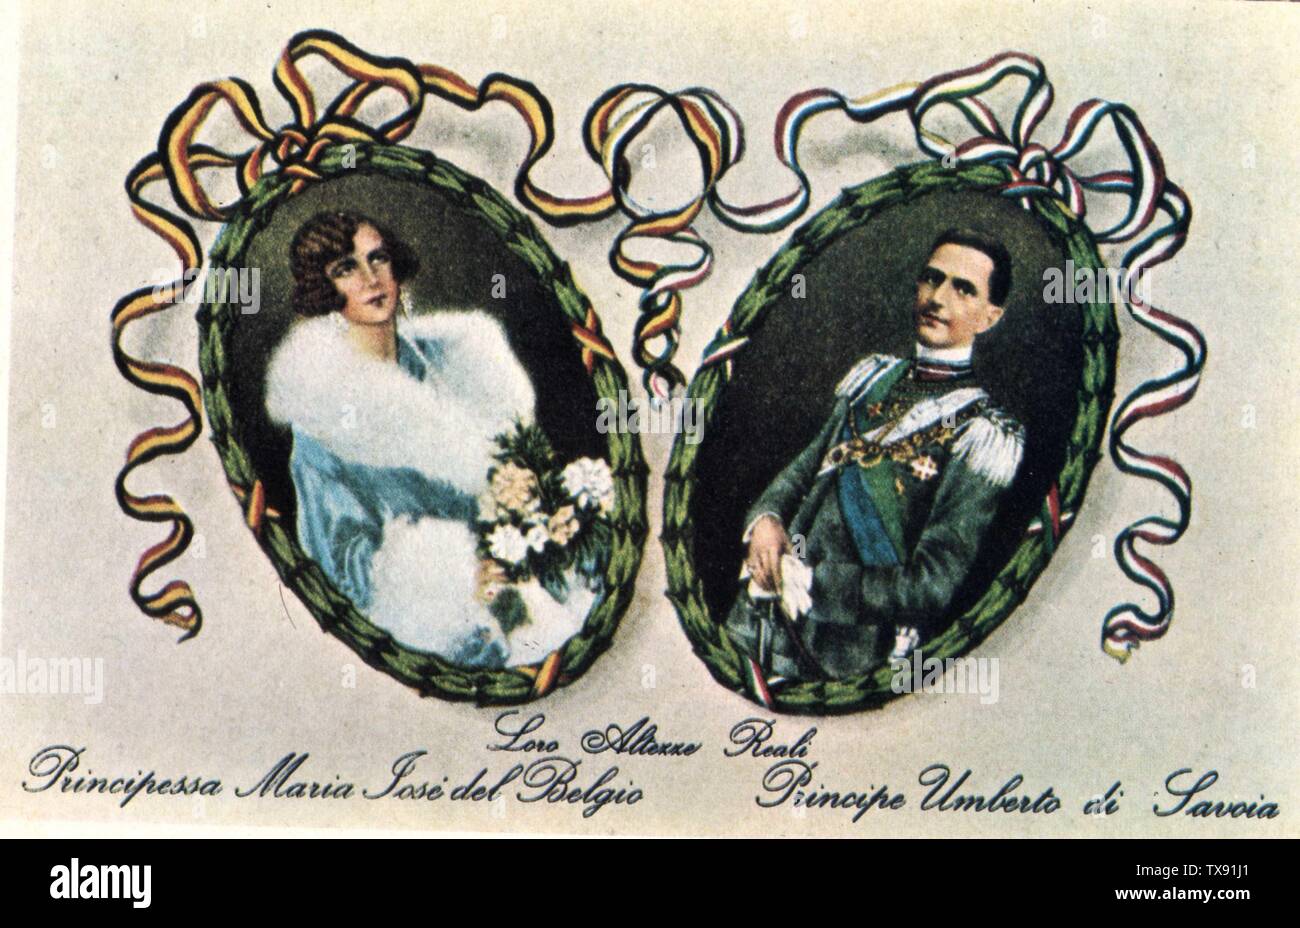 Cartolina edita in occasione delle nozze tra Umberto di Savoia, erede al trono d'italia, e Maria JosÃ¨ del Belgio; 1930; Cartolina d'epoca; Unknown; Stock Photo